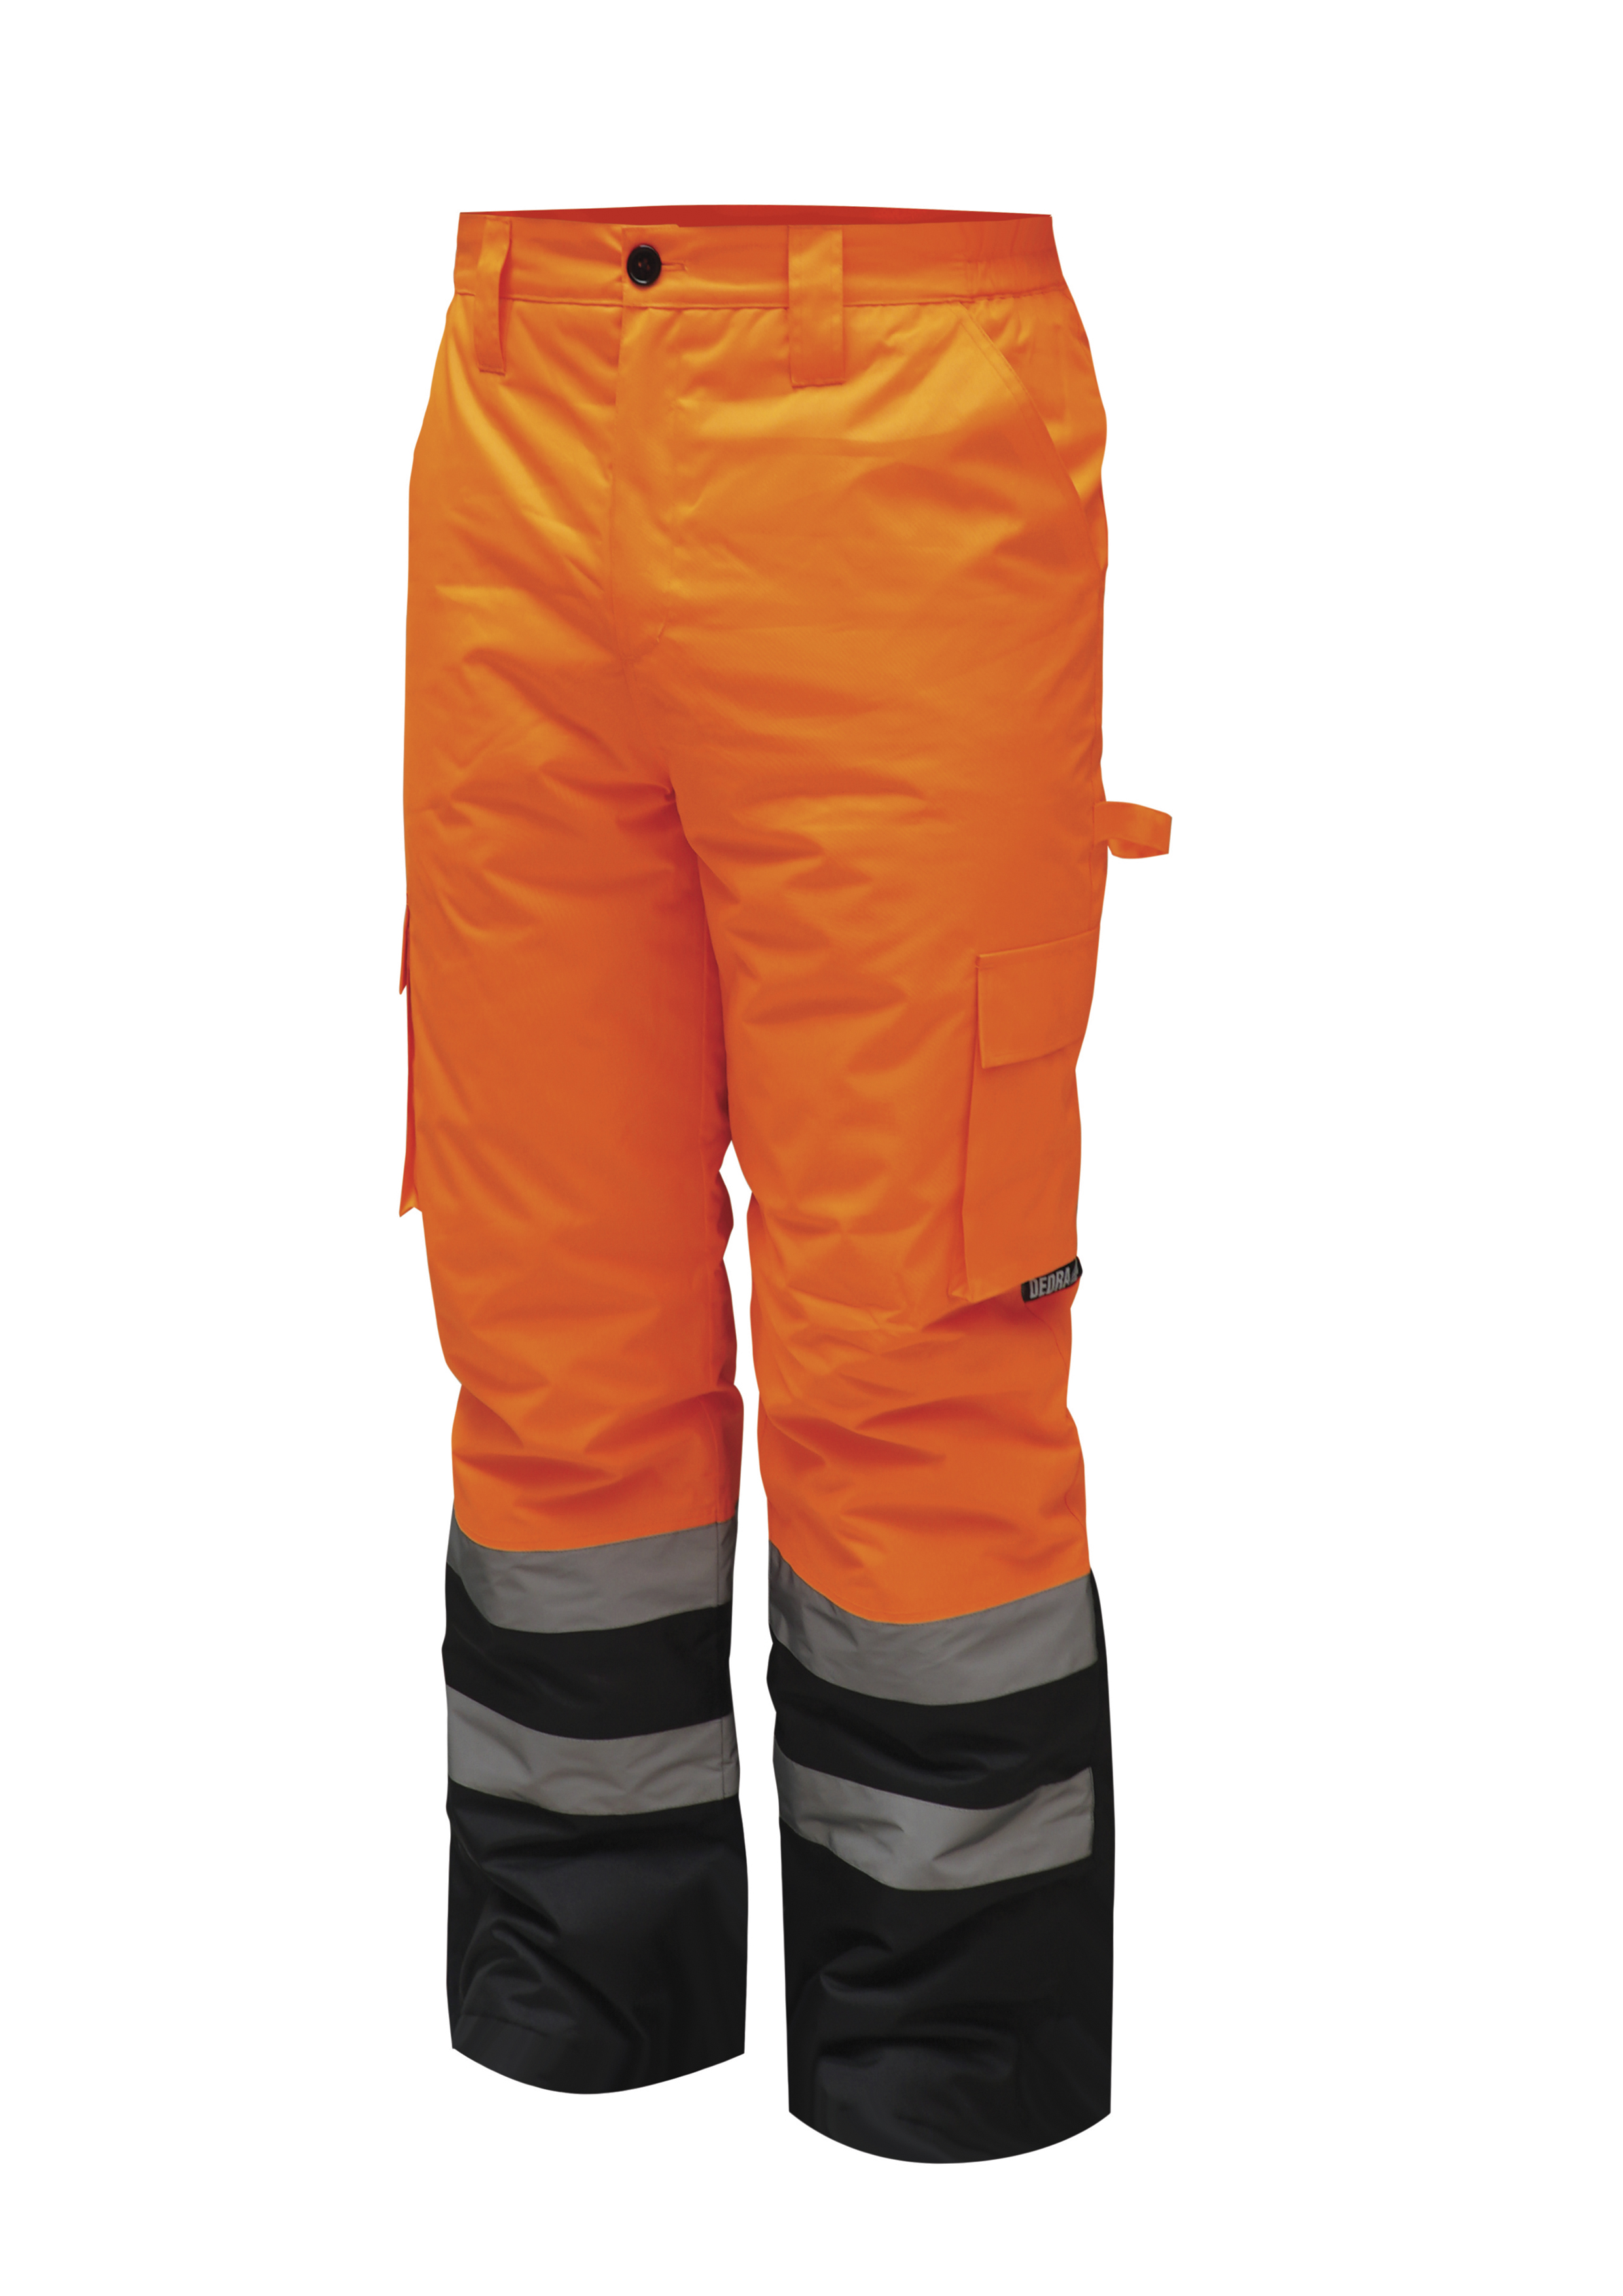 Reflexní zateplené kalhoty vel. XL, oranžové DEDRA BH80SP2-XL + Dárek, servis bez starostí v hodnotě 300Kč